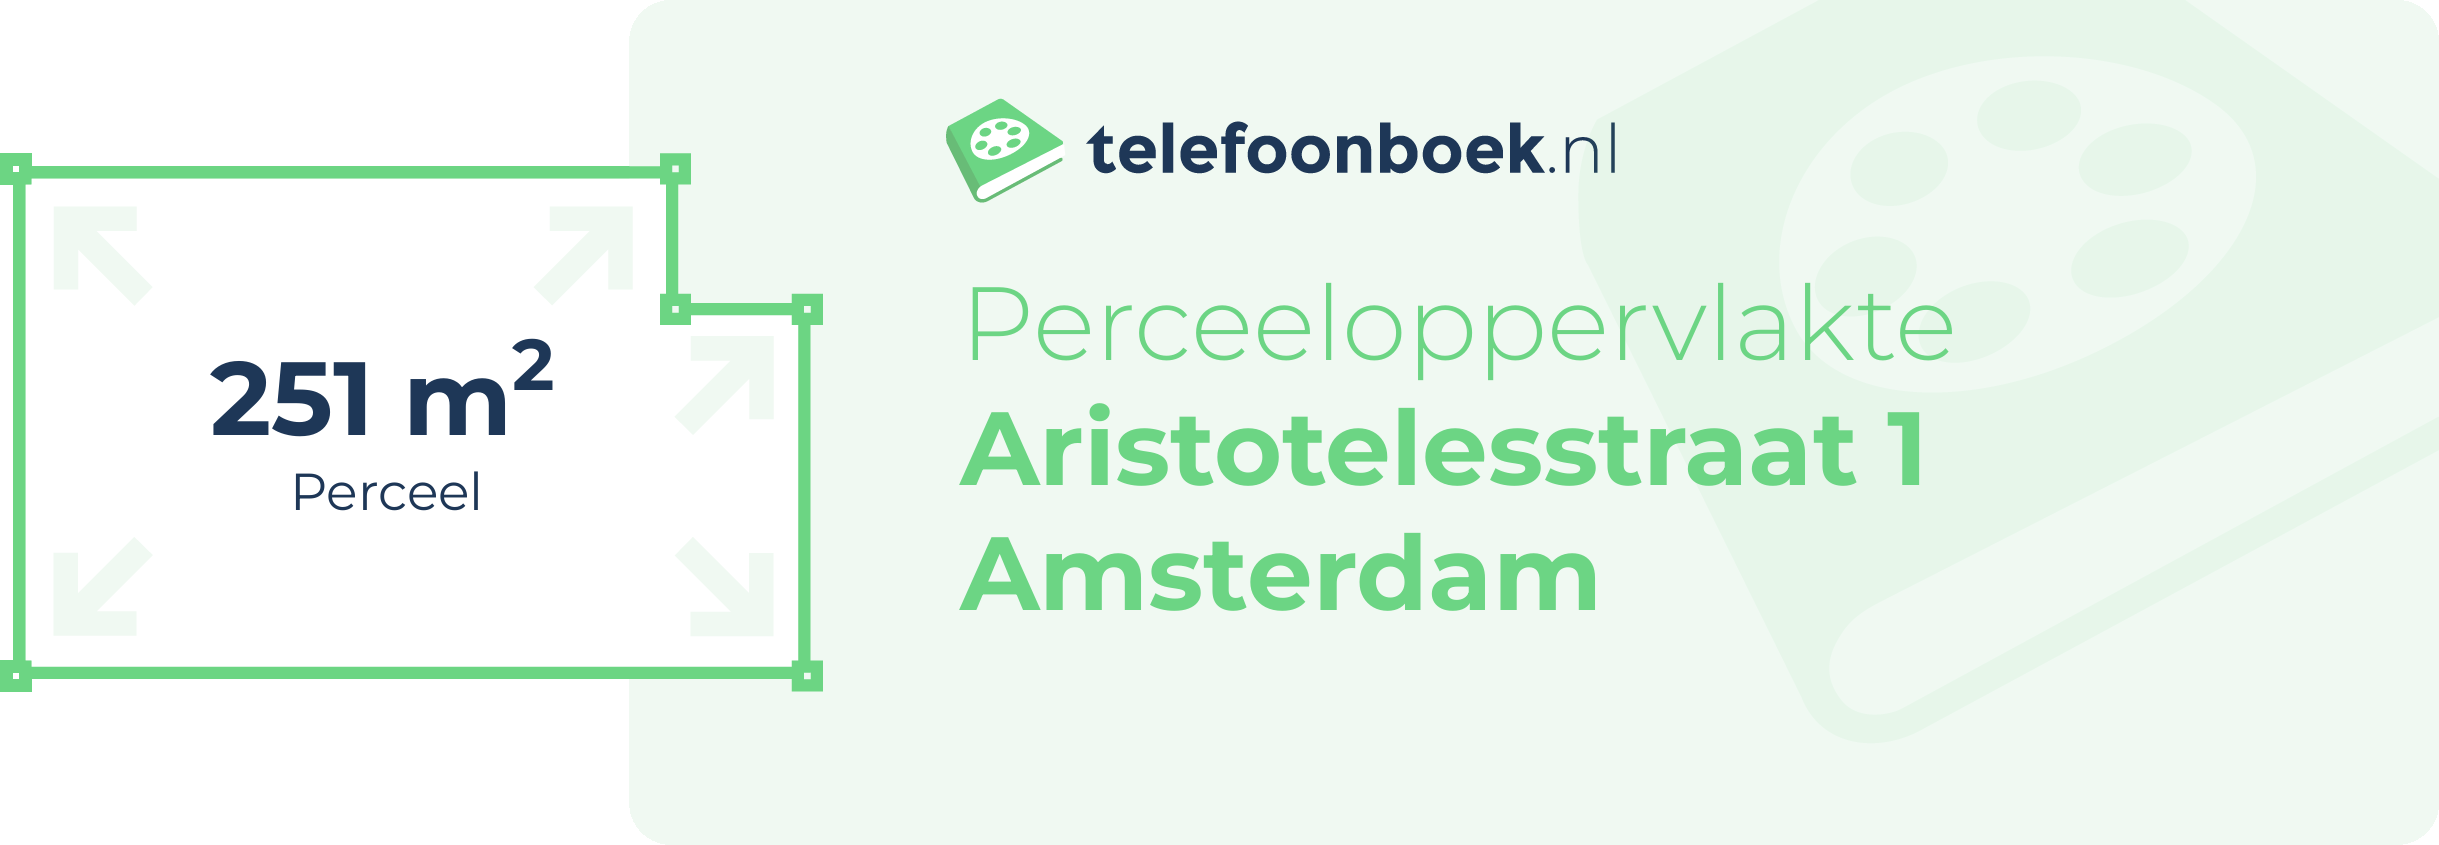 Perceeloppervlakte Aristotelesstraat 1 Amsterdam